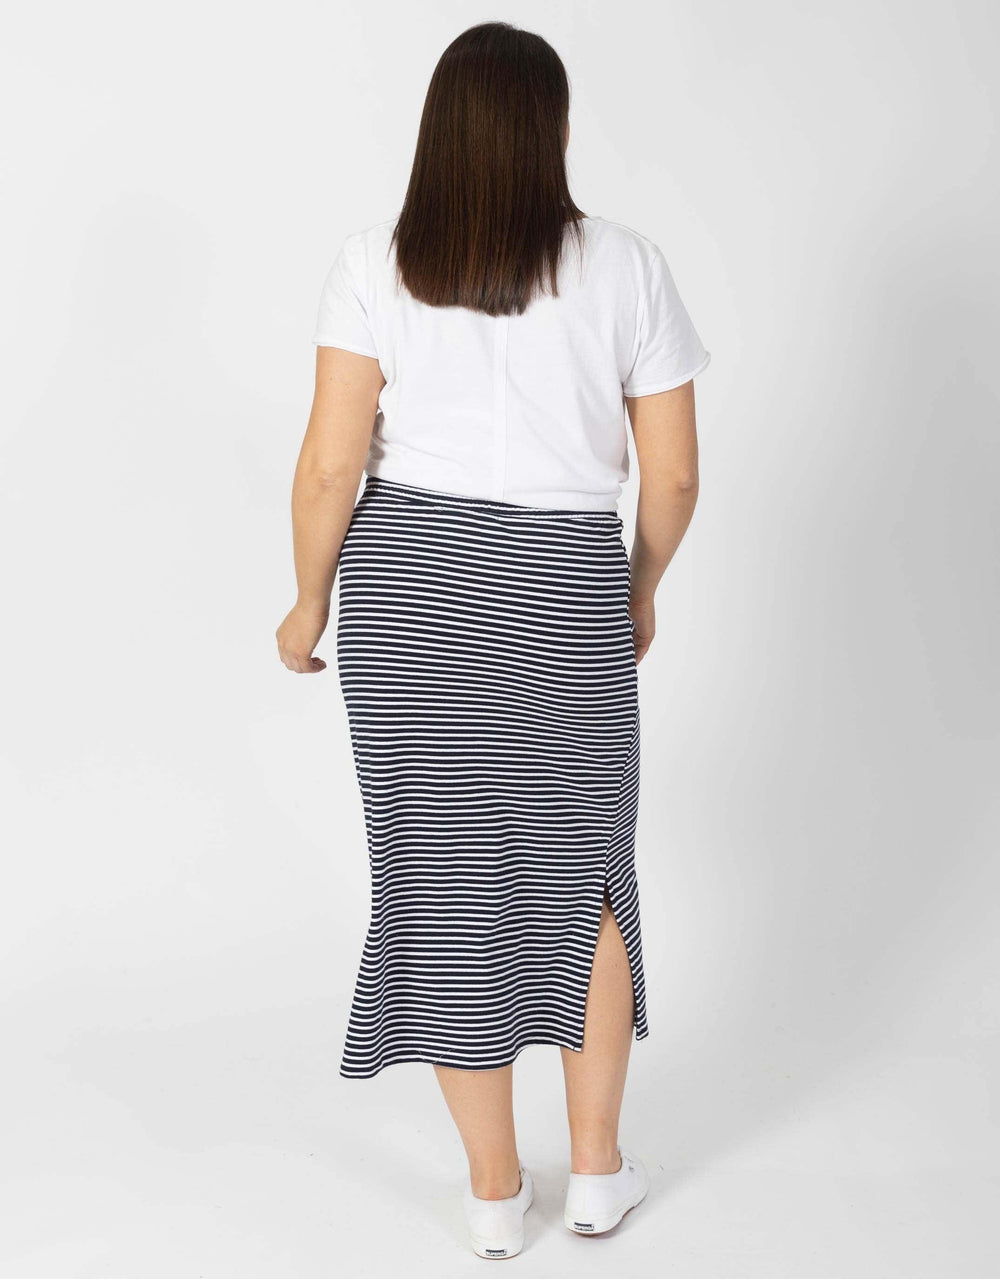 Elm - Travel Skirt - Navy/White Stripe - White & Co Living Skirts